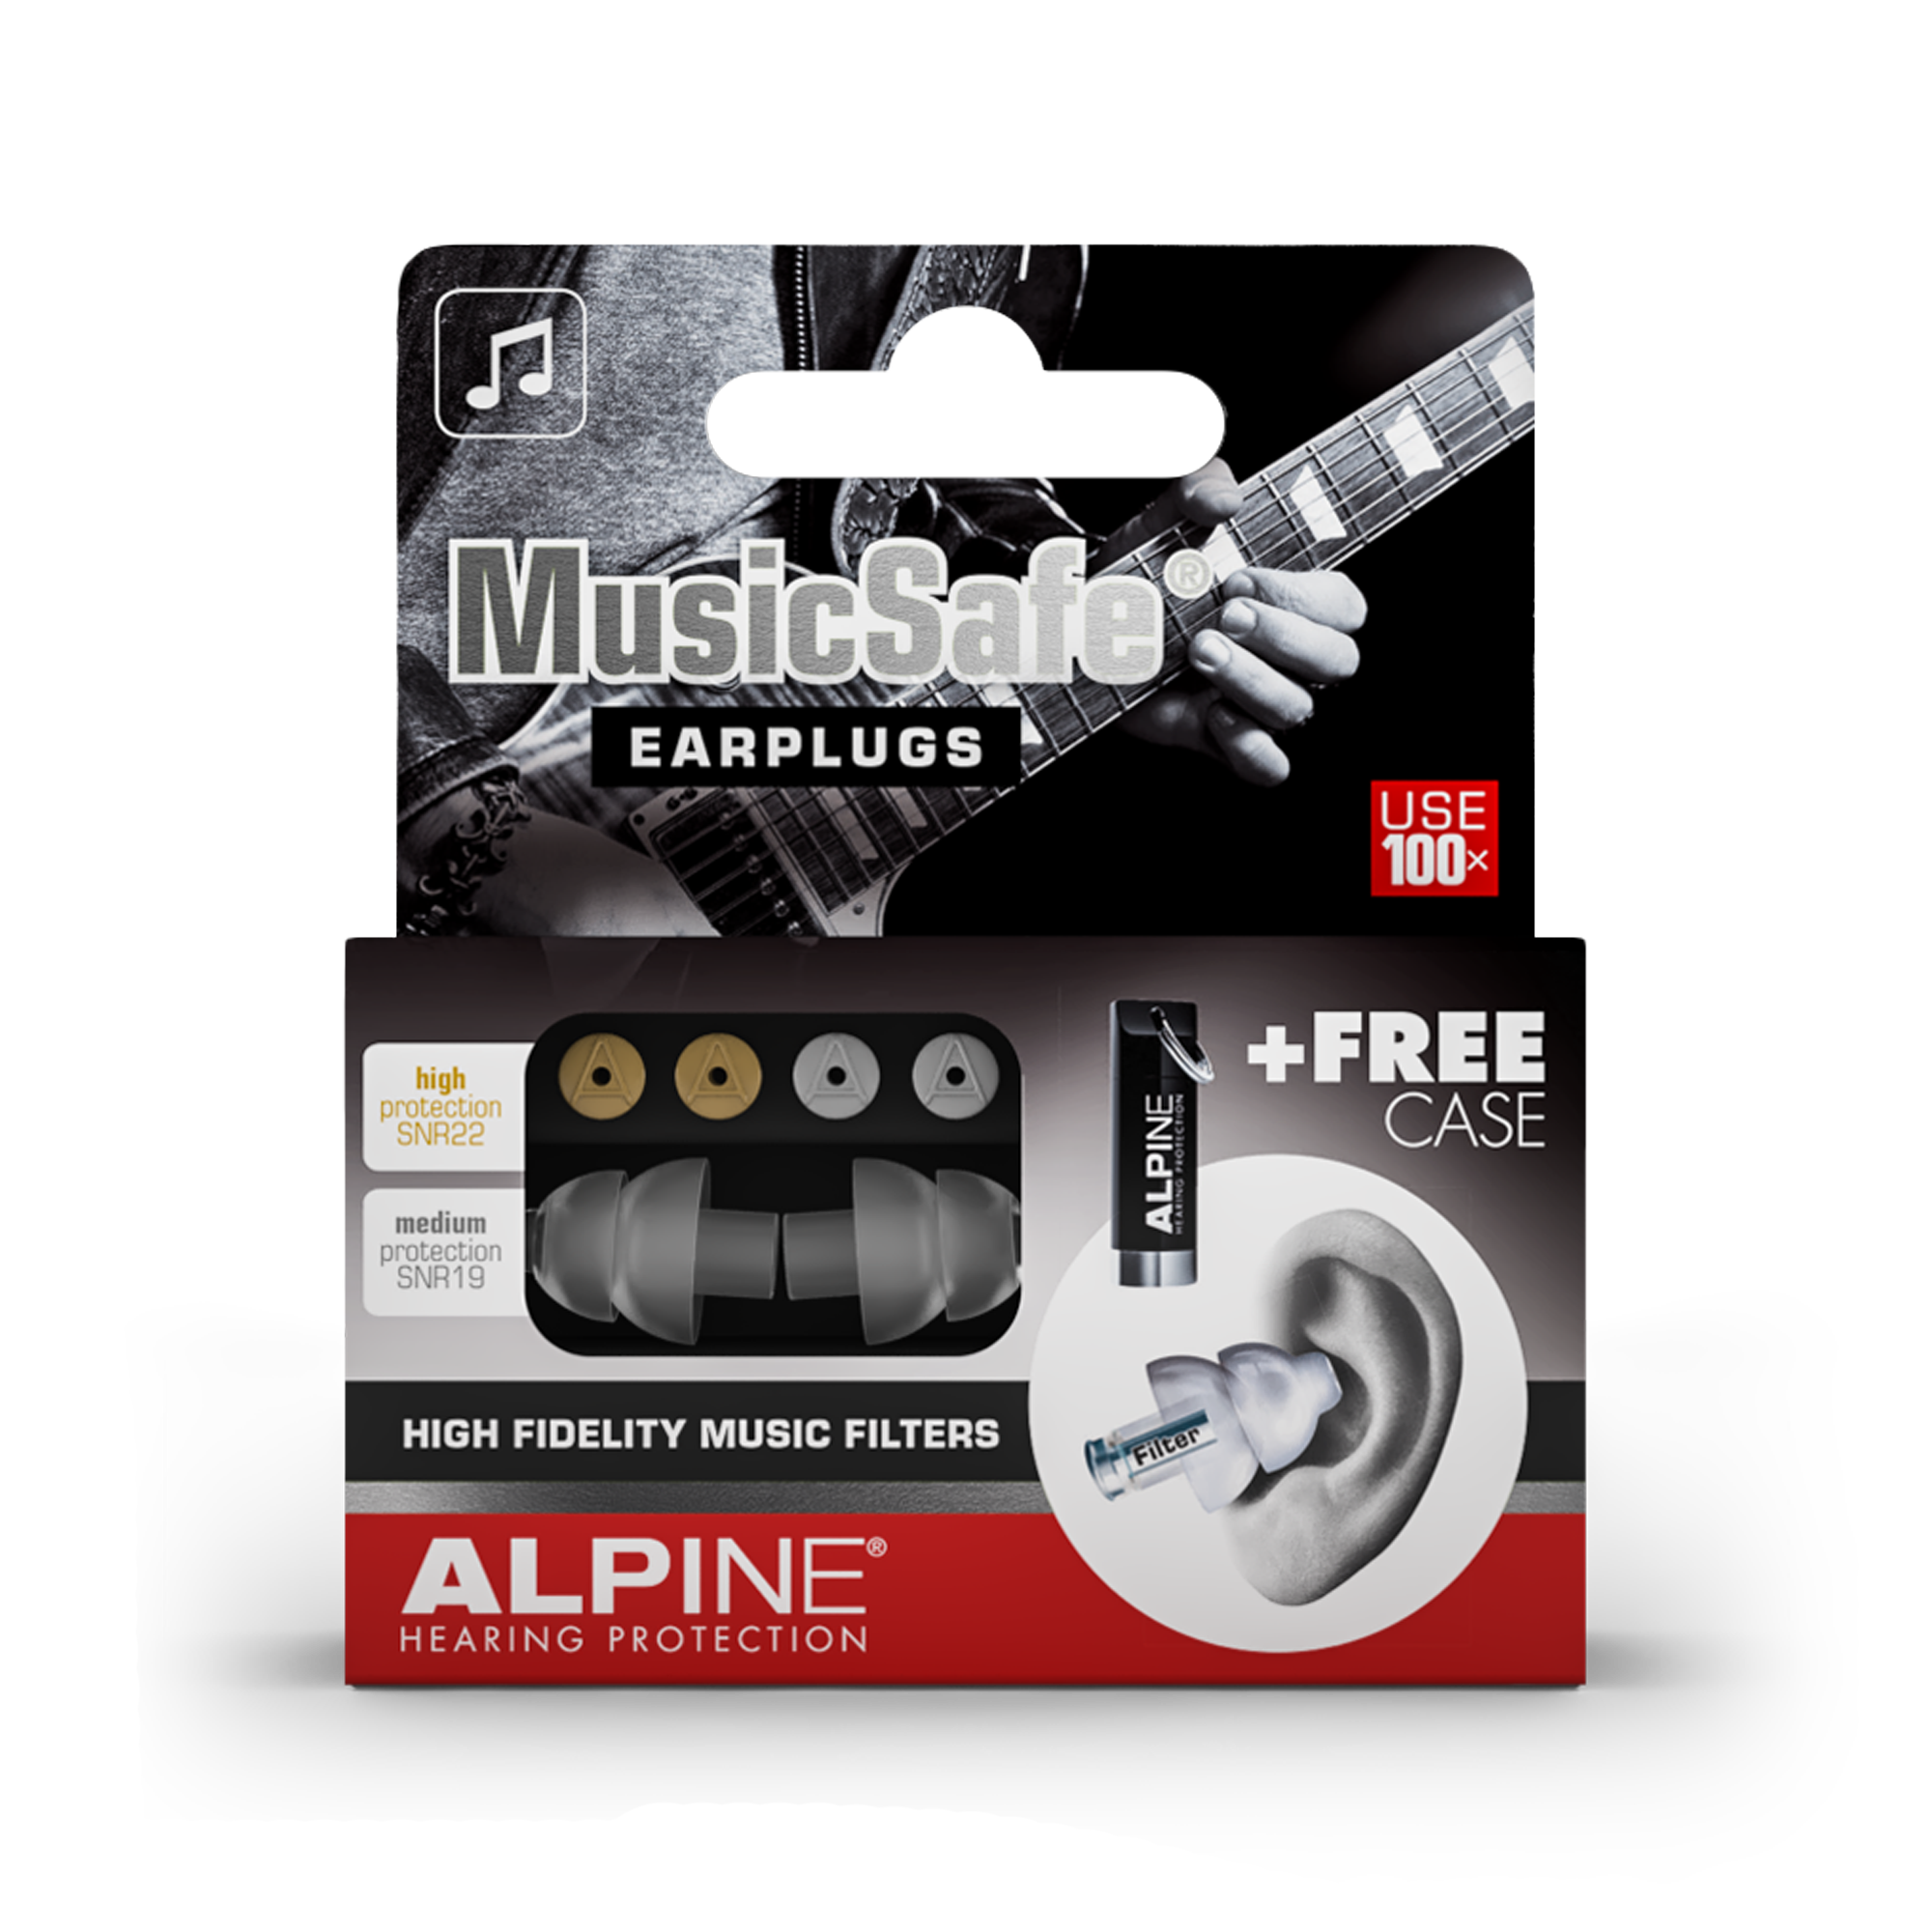 Bouchons d'oreilles Alpine PartyPlug Protection auditive